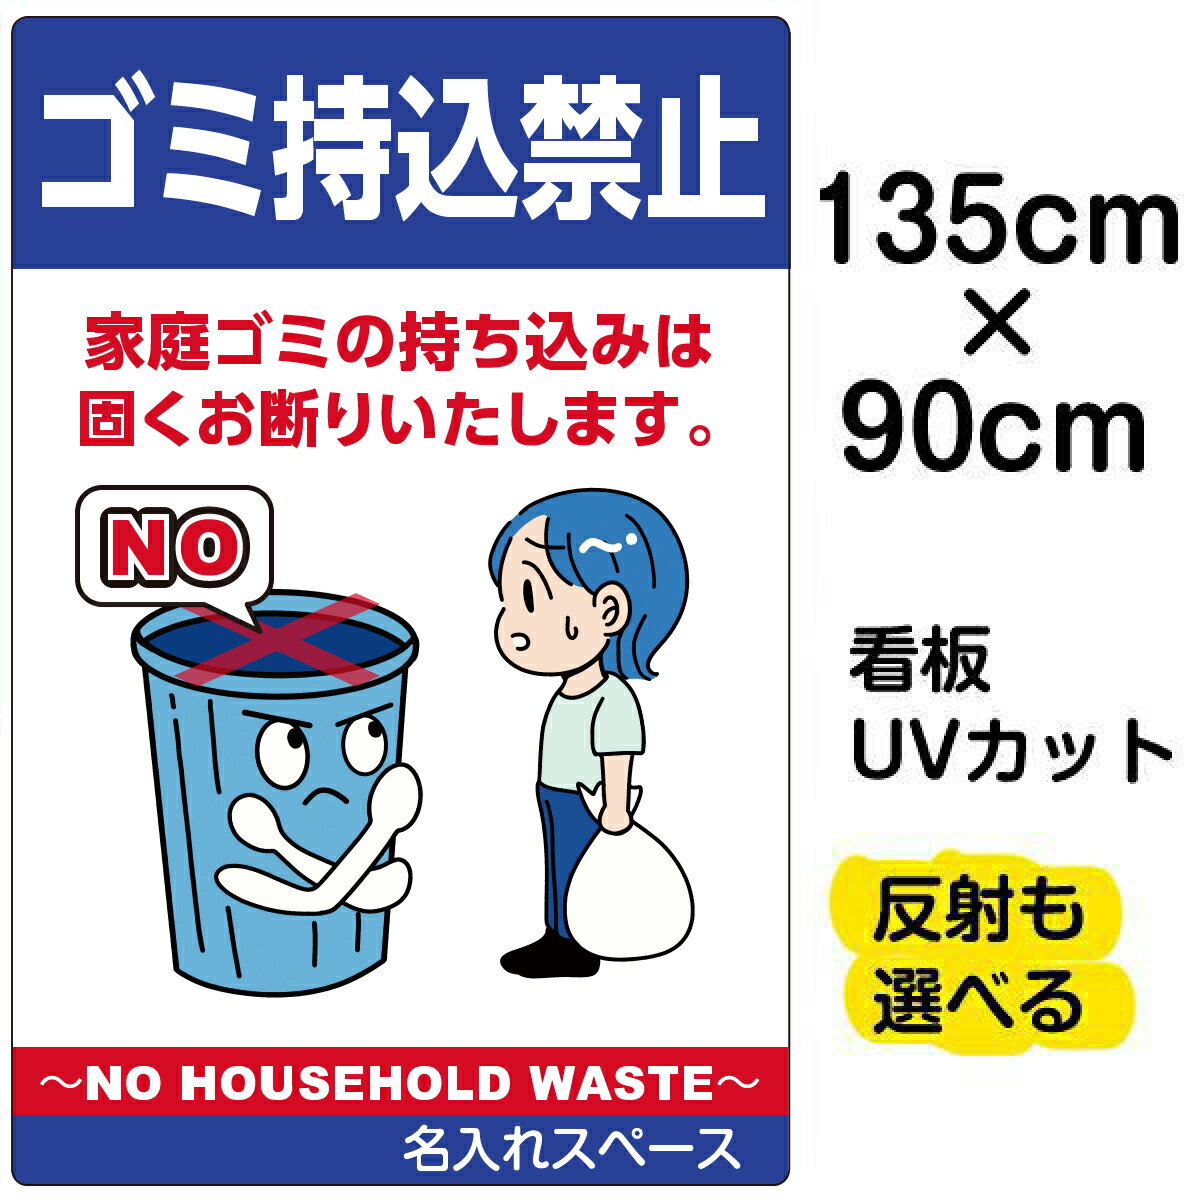 看板/表示板/「ゴミ持込禁止 NO HOUSEHOLD WASTE」特大サイズ/90cm×135cm/缶/ビン/ペットボトル/イラスト/プレート